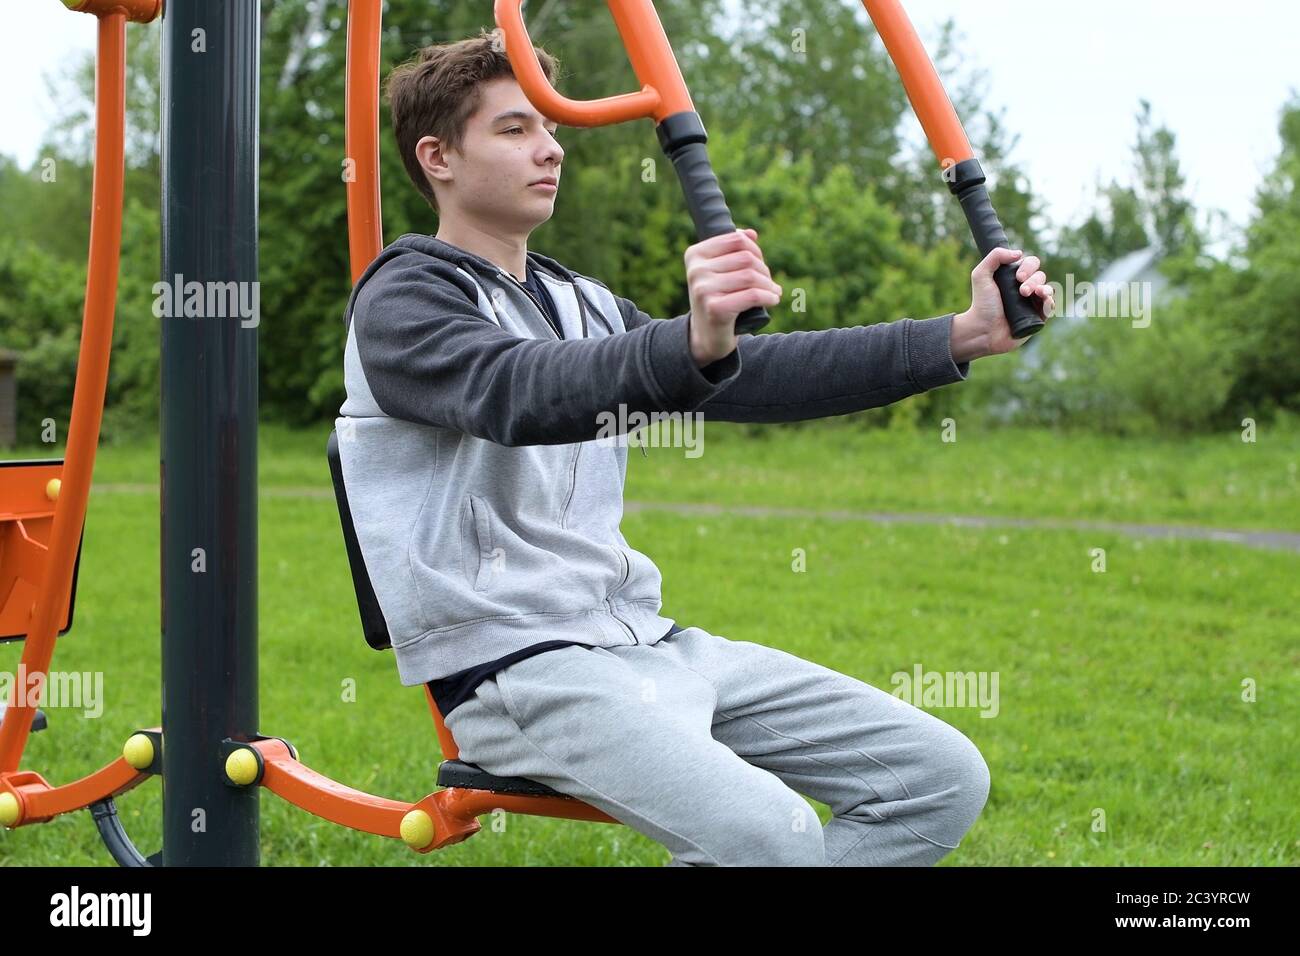 Ein Teenager trainiert auf einer Sportmaschine mit dem eigenen Gewicht eines Athleten. Stockfoto